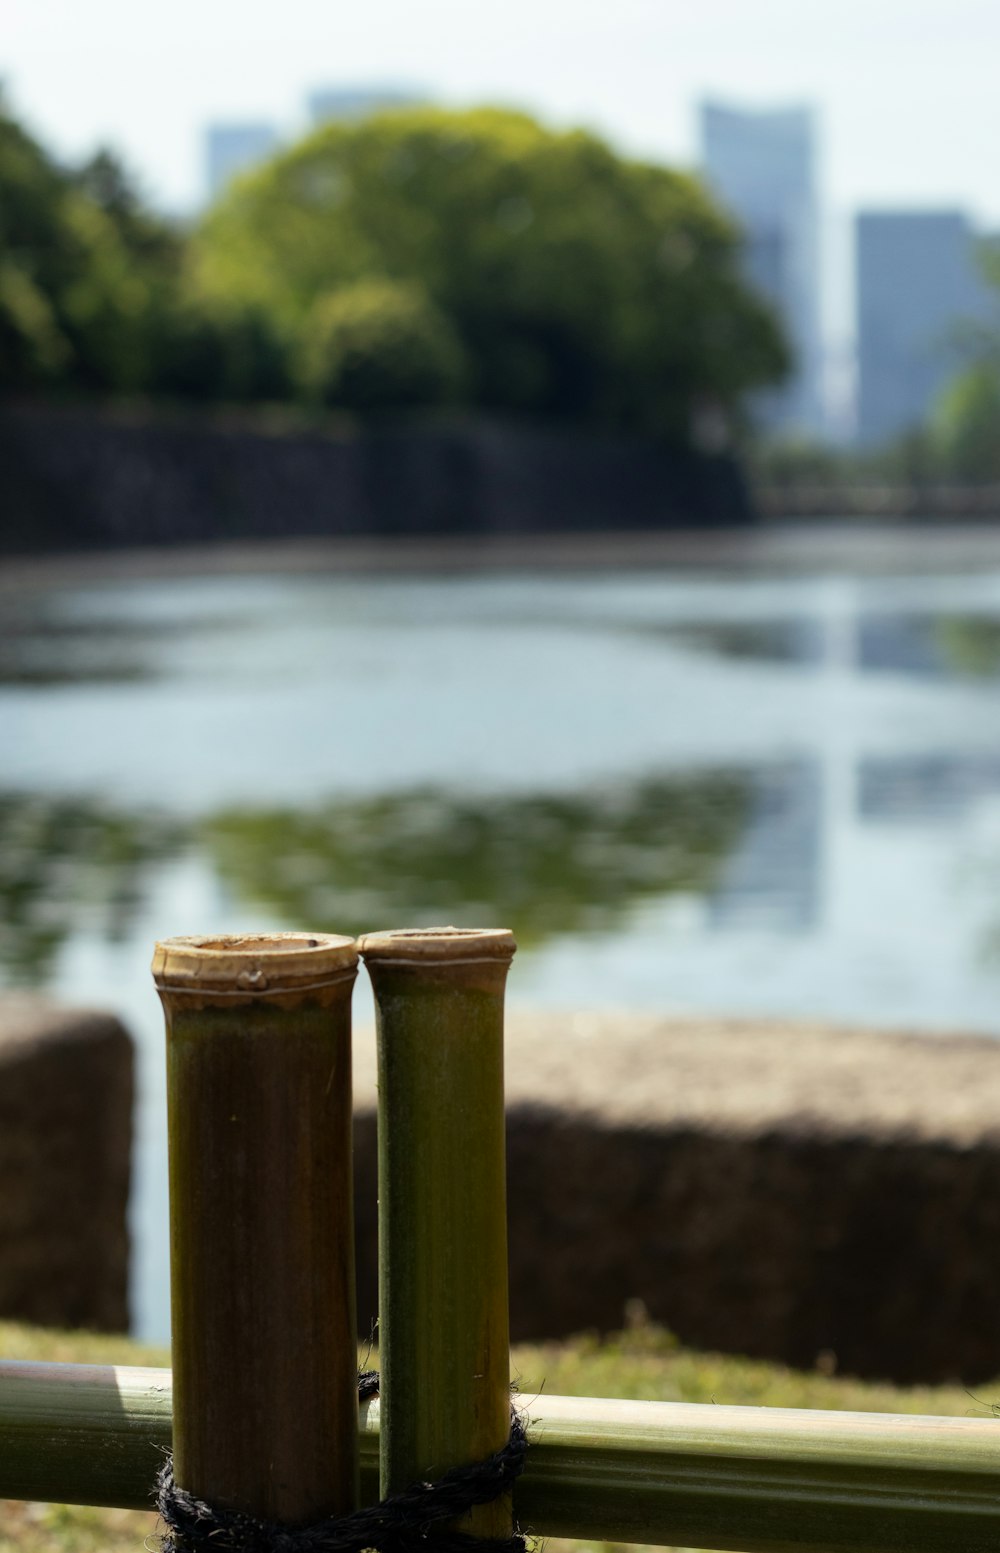 quelques perches de bambou posées sur un champ couvert d’herbe